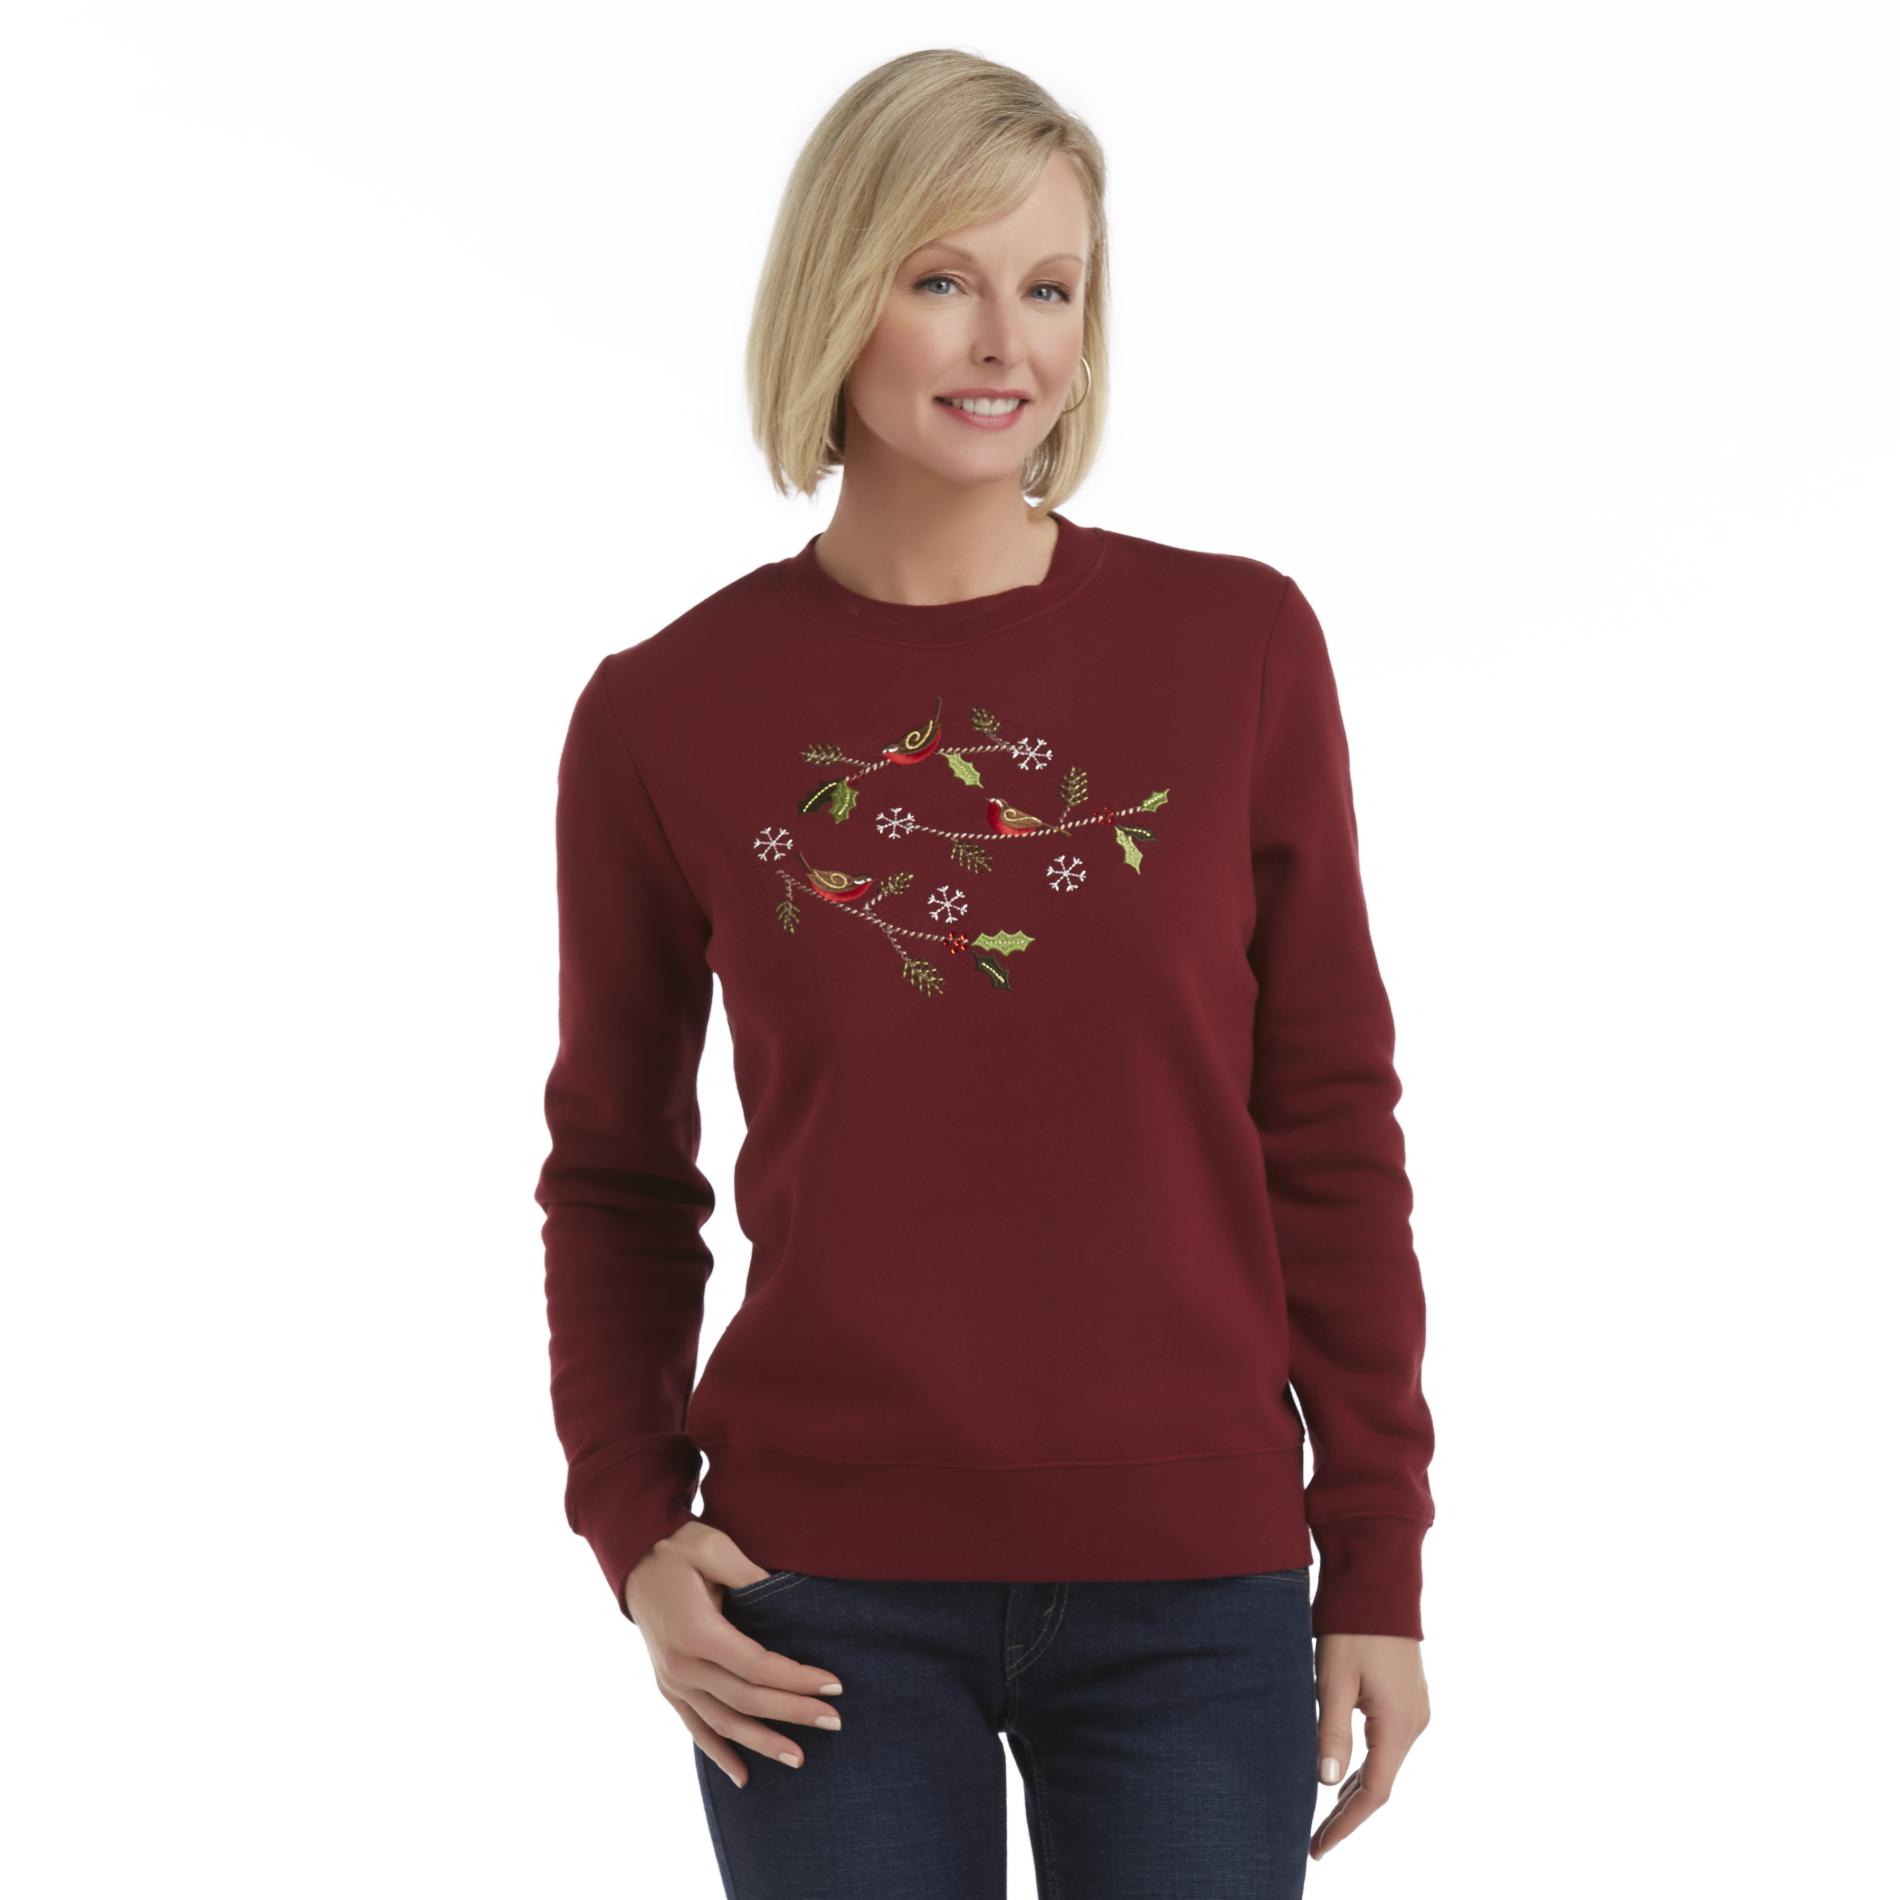 Holiday Editions Women's Christmas Fleece Sweatshirt - Birds